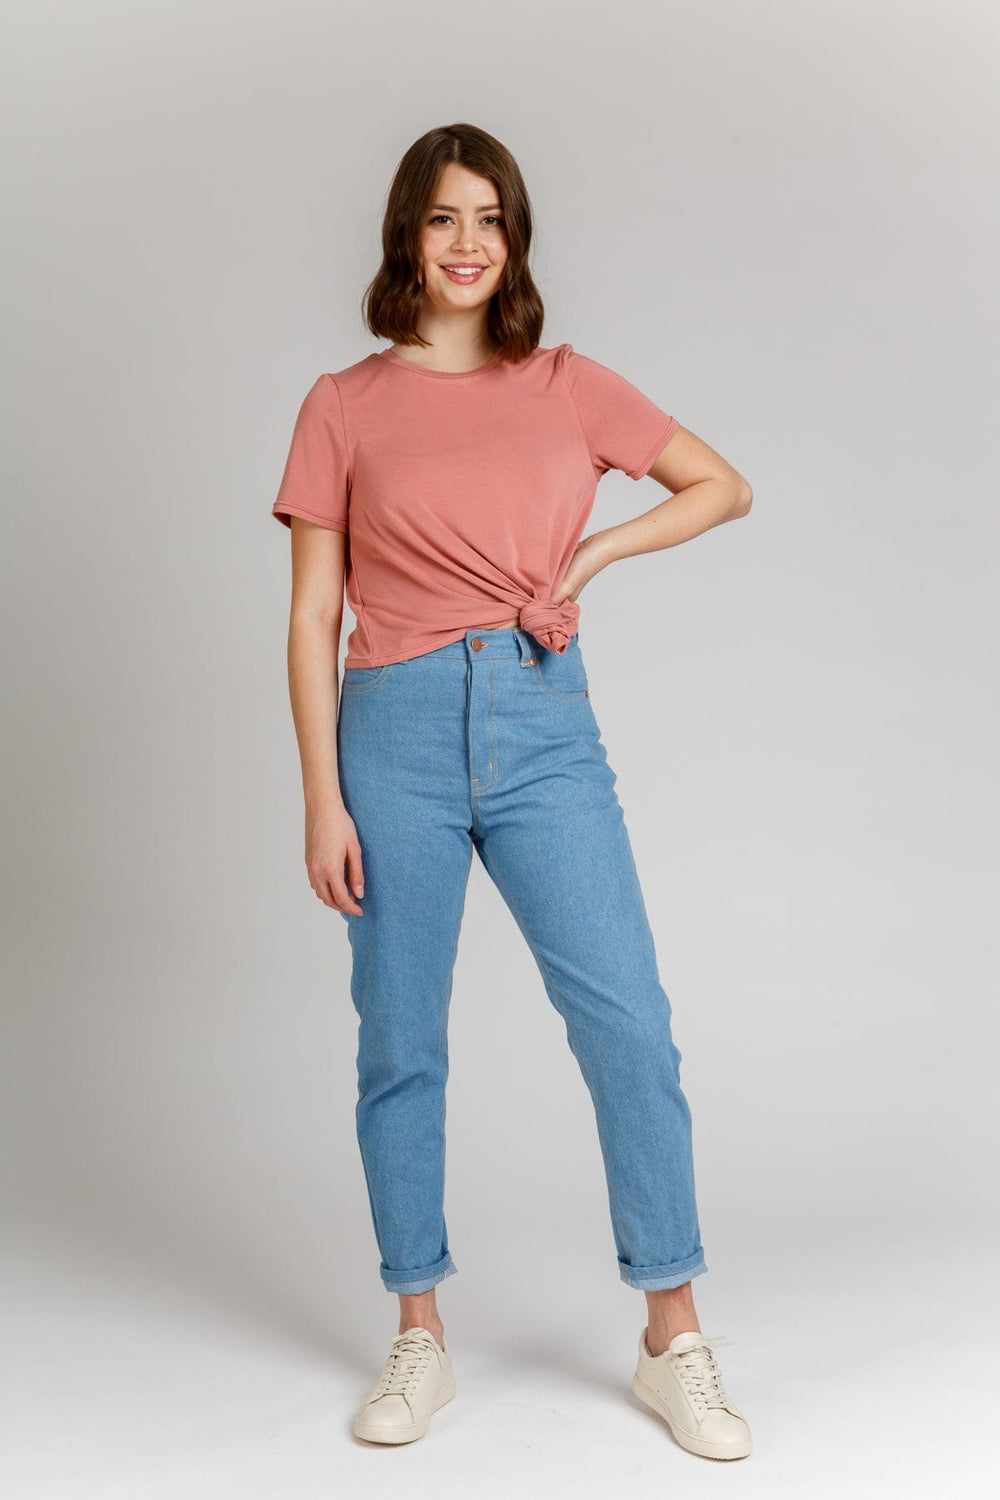 Dawn Ridgid Jeans - Sizes 0-20 - Megan Nielsen